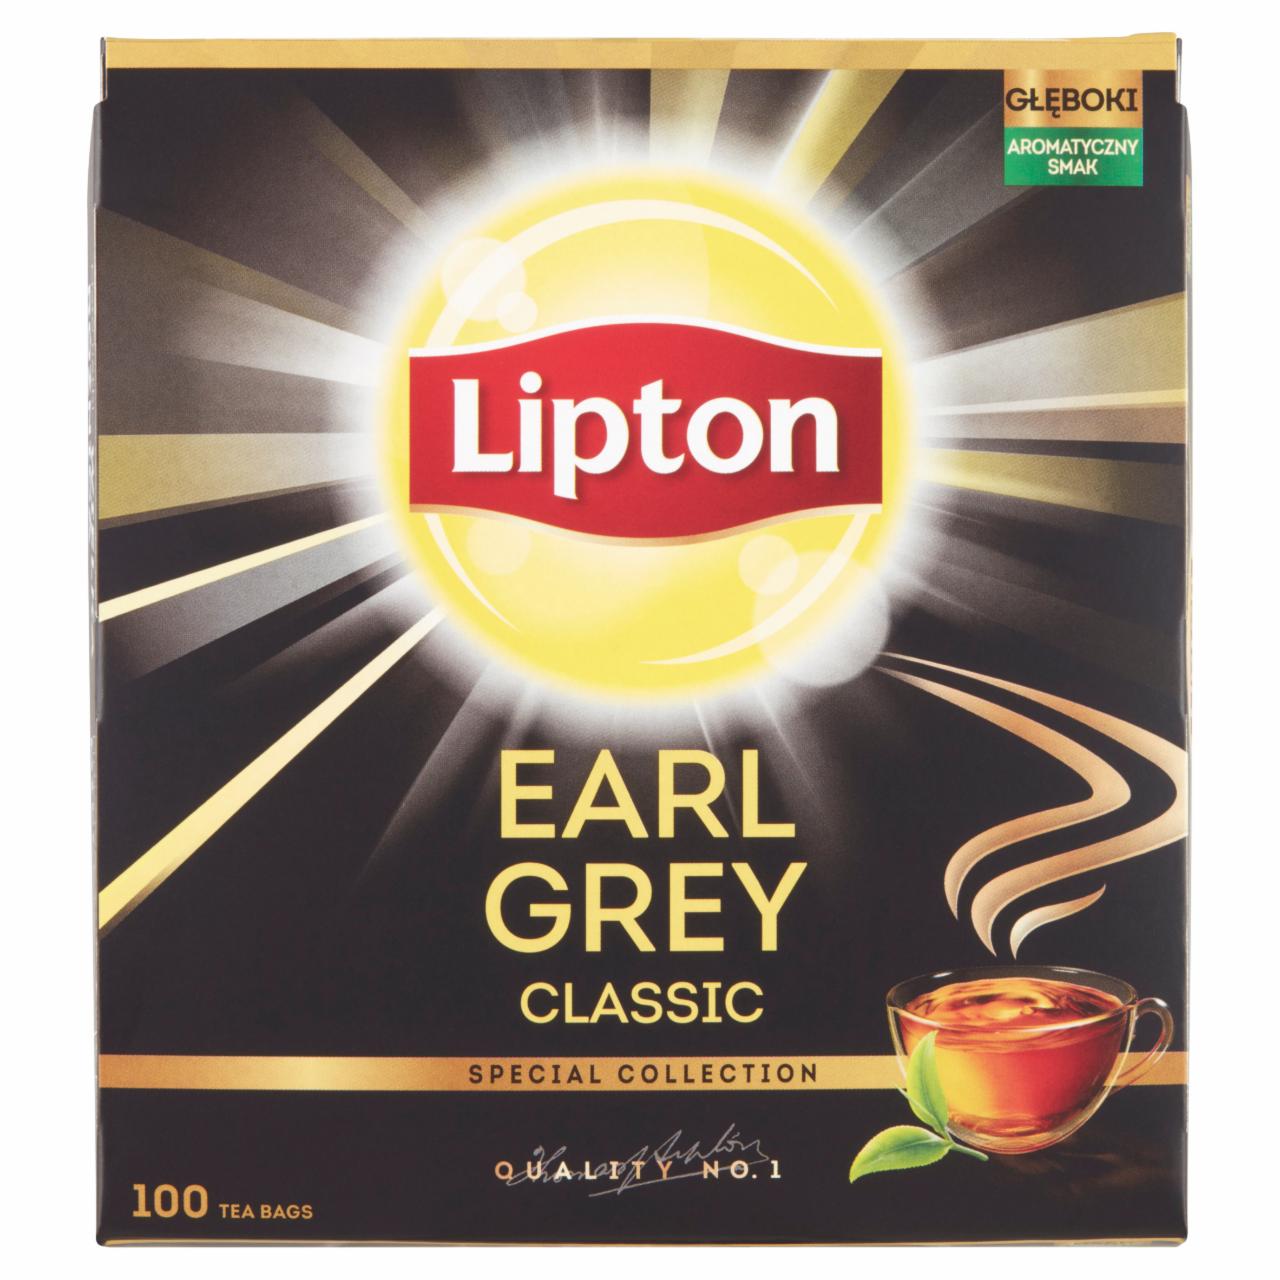 Képek - Lipton Earl Grey Classic bergamott ízesítésű fekete tea 100 filter 150 g